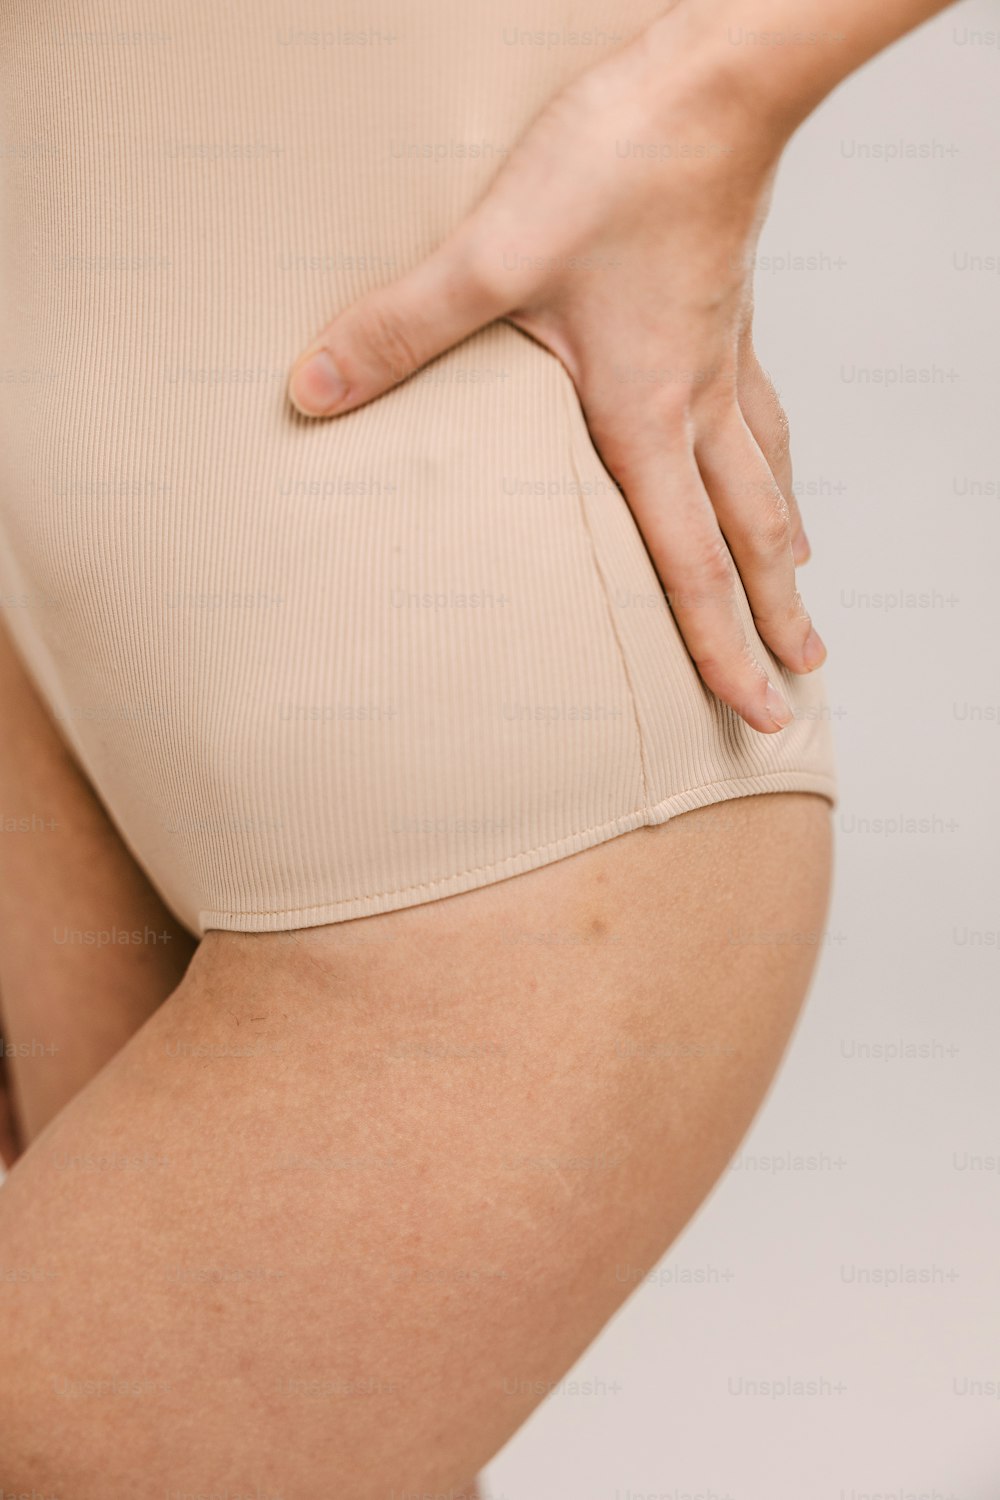 el trasero de una mujer mostrando la parte inferior de su cuerpo